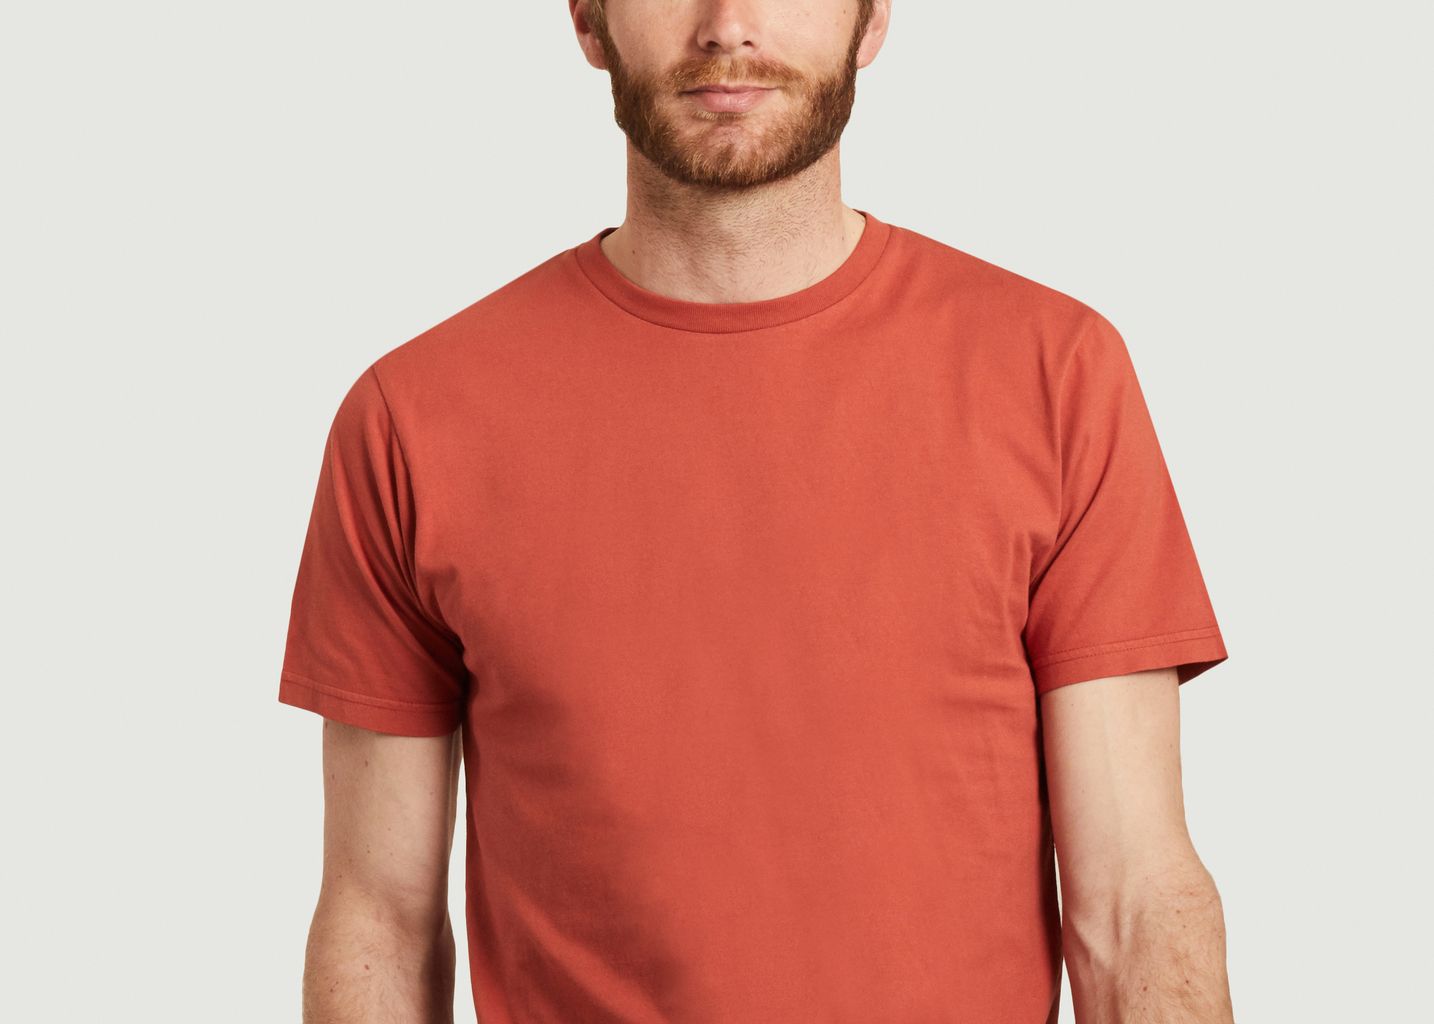 T-shirt classique en coton bio - Colorful Standard